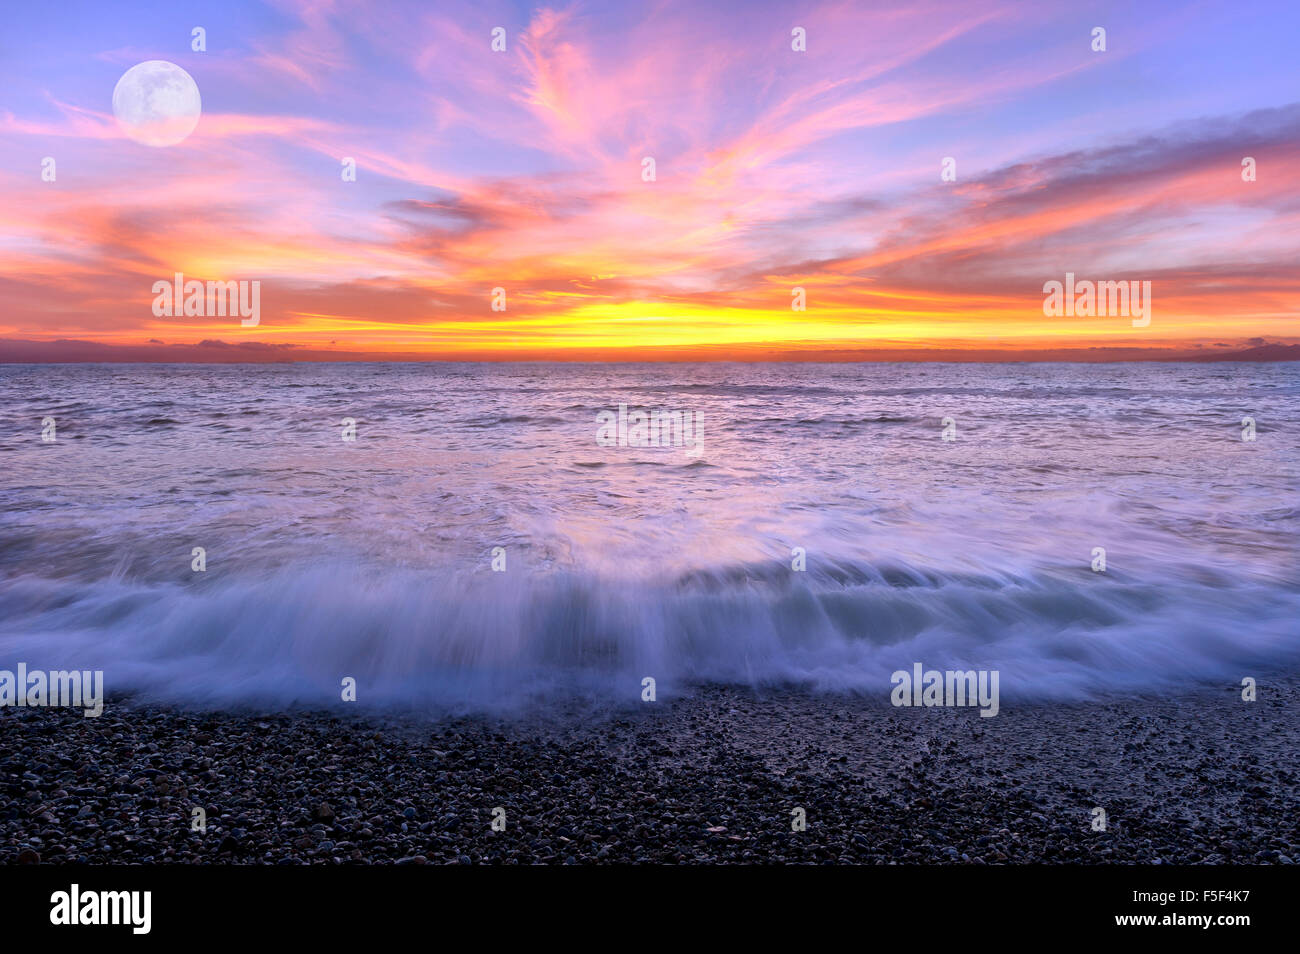 Ocean sunset lune est un ciel rempli de couleurs avec les vagues se brisant sur le rivage et la pleine lune se levant à l'arrière-plan. Banque D'Images